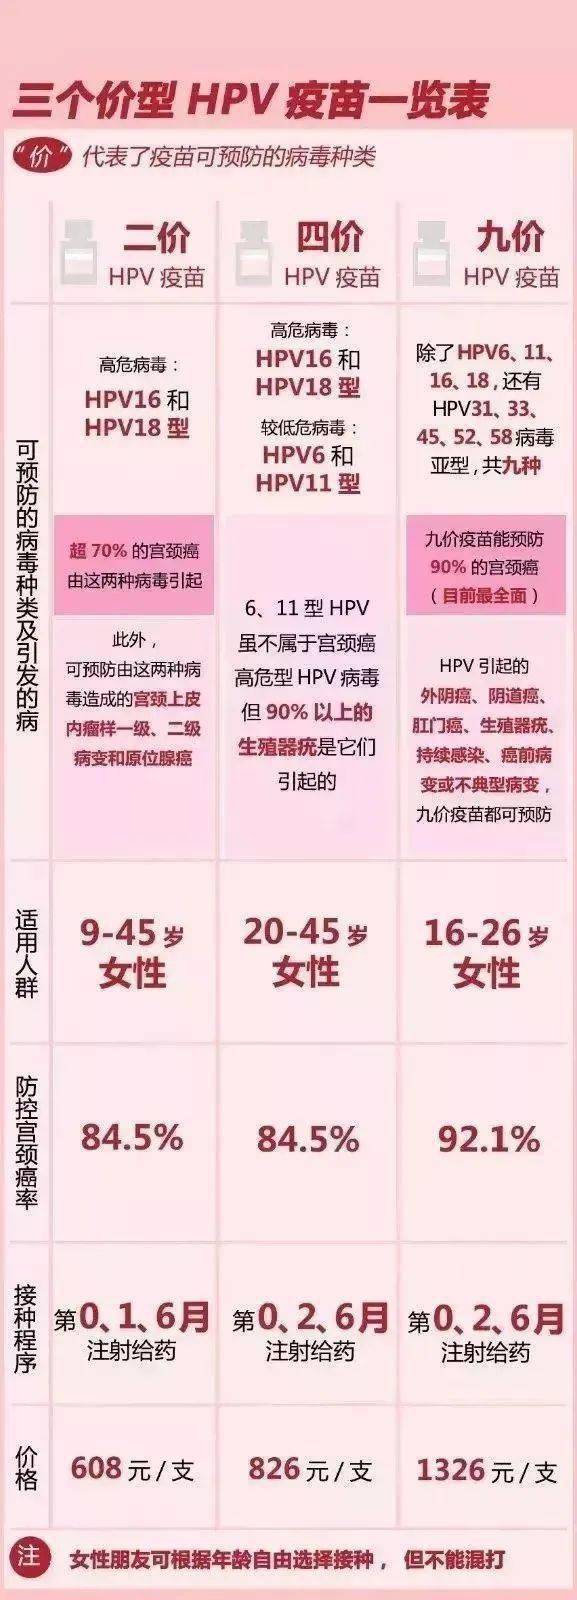 三种价型 hpv疫苗区别表 疫苗价格以实际为准,表中为单支价格,全程